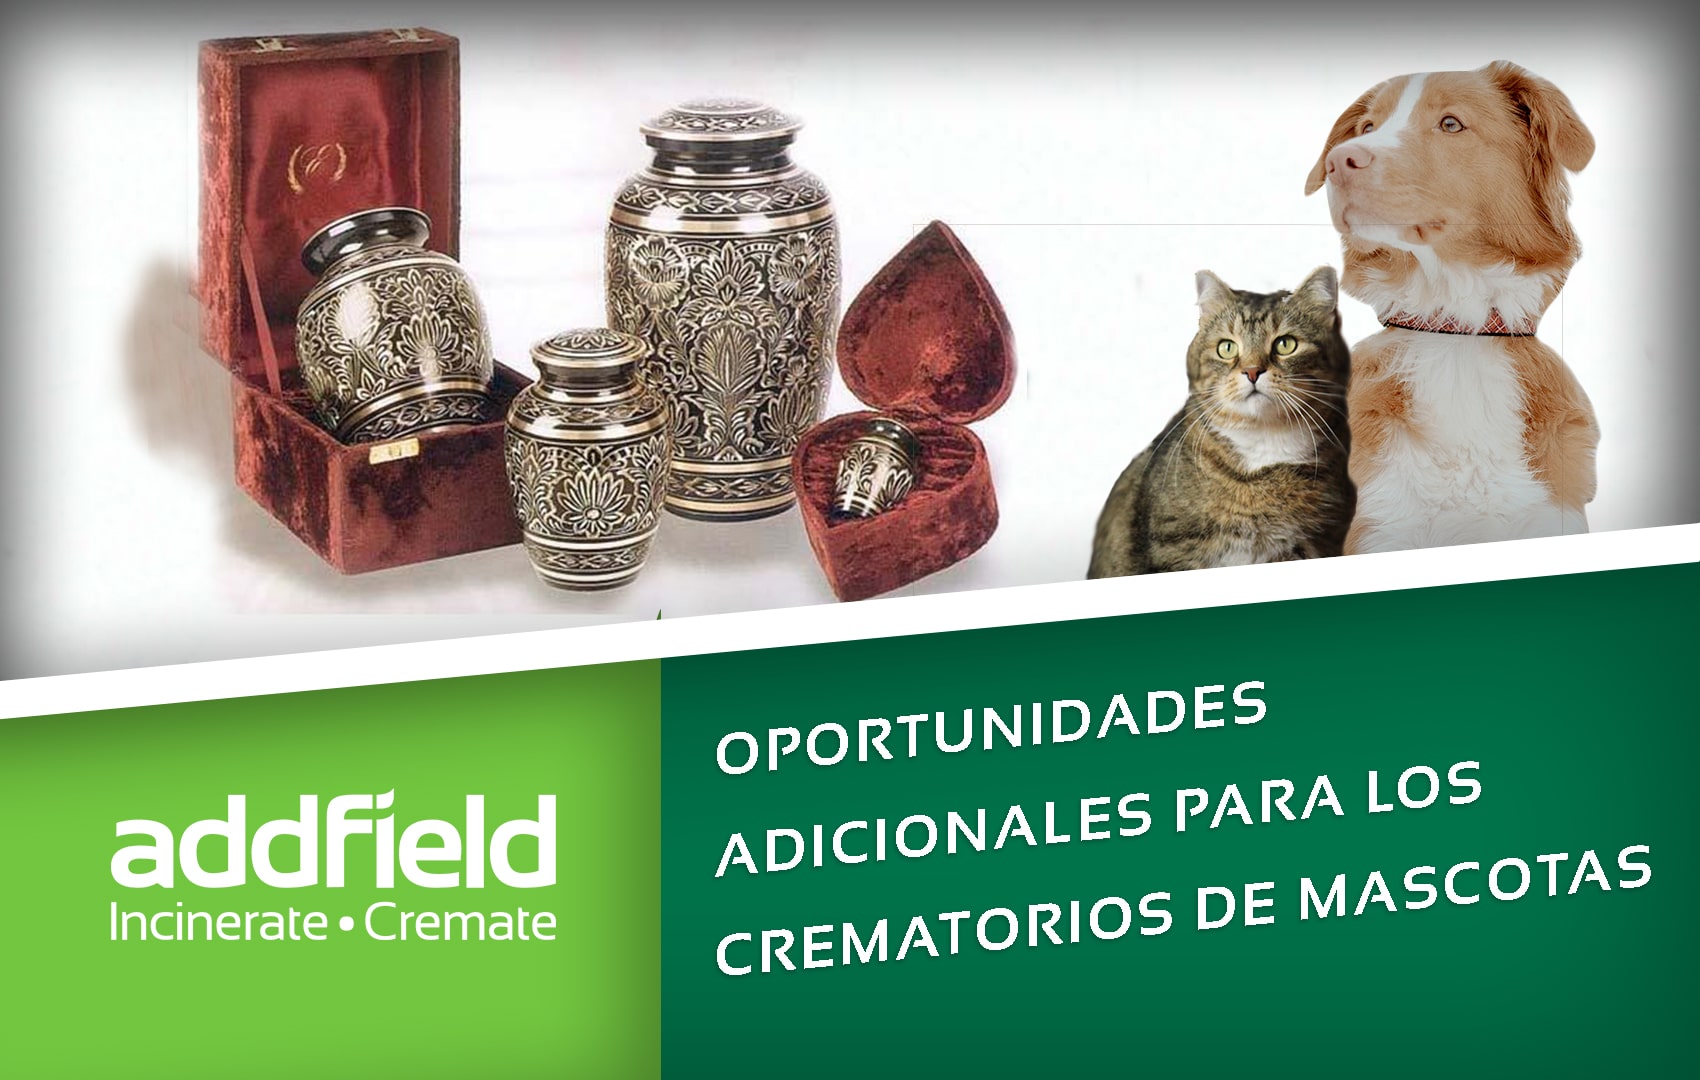 oportunidades adicionales para los crematorios de mascotas